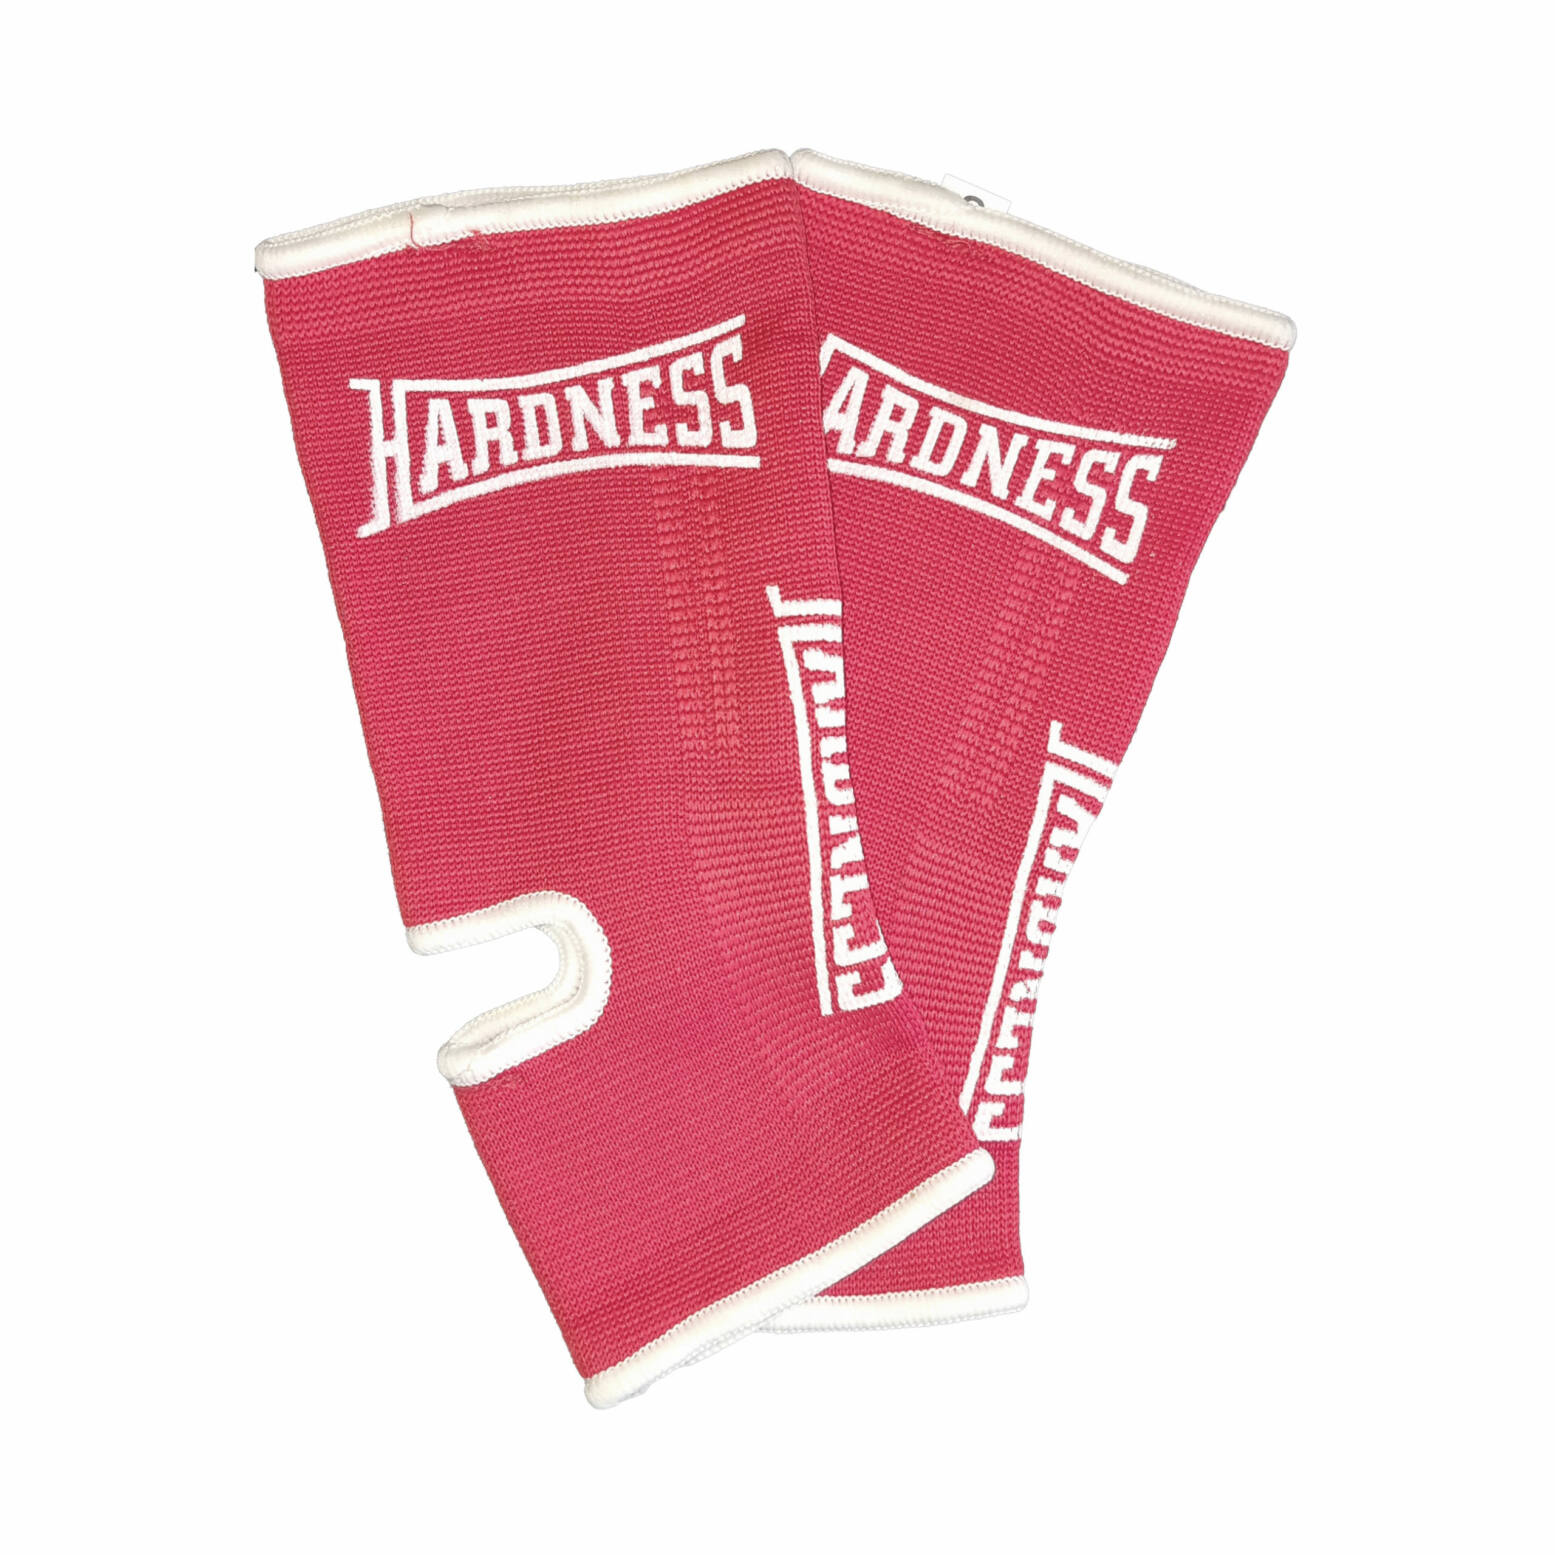 Hardness Enkelkousen B-Stock – Rood met wit 1